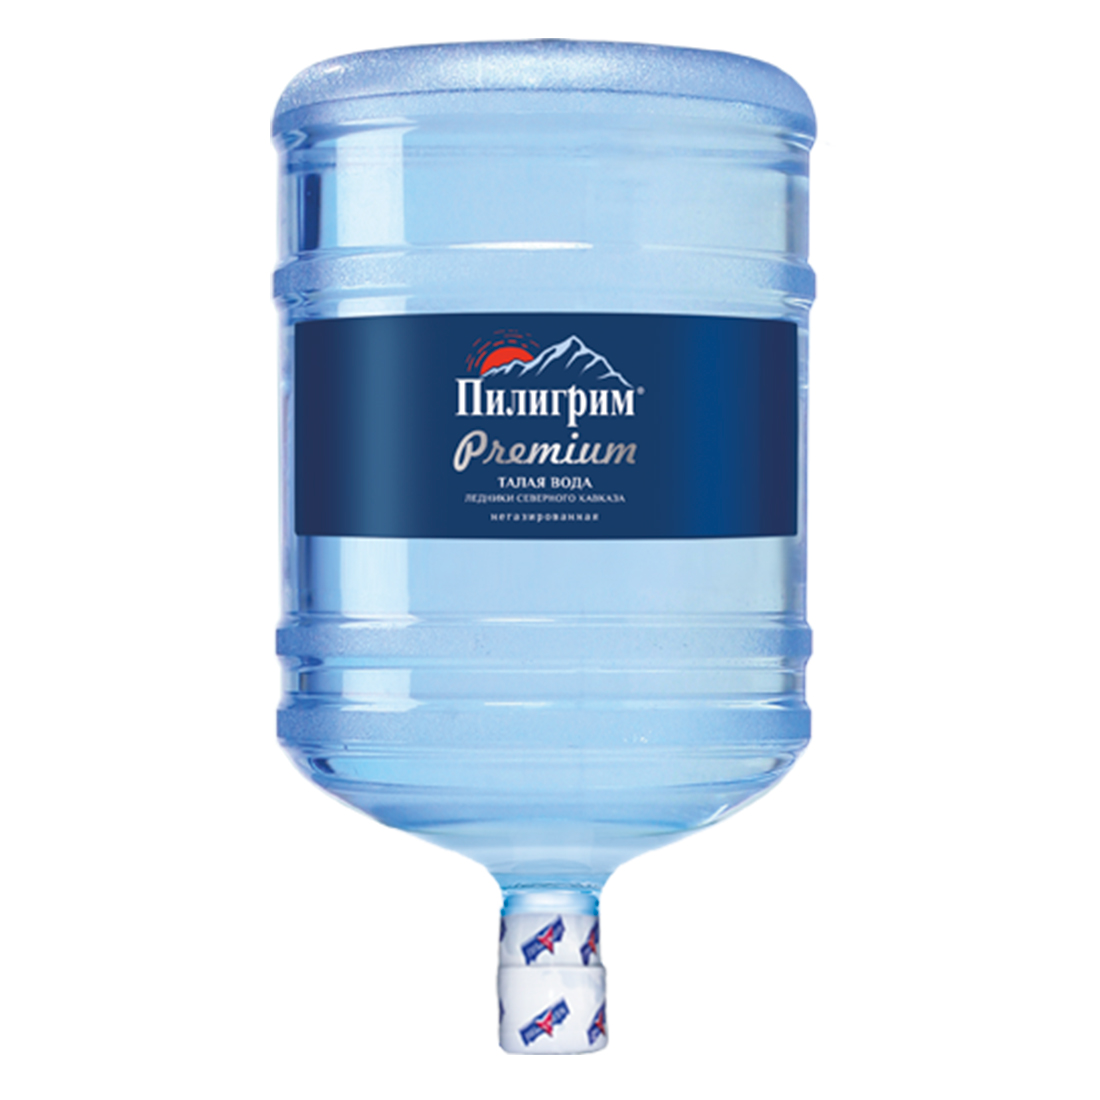 Пилигрим Premium - вода миниральная природная столовая питьевая вода 19 литров негазированная - 1